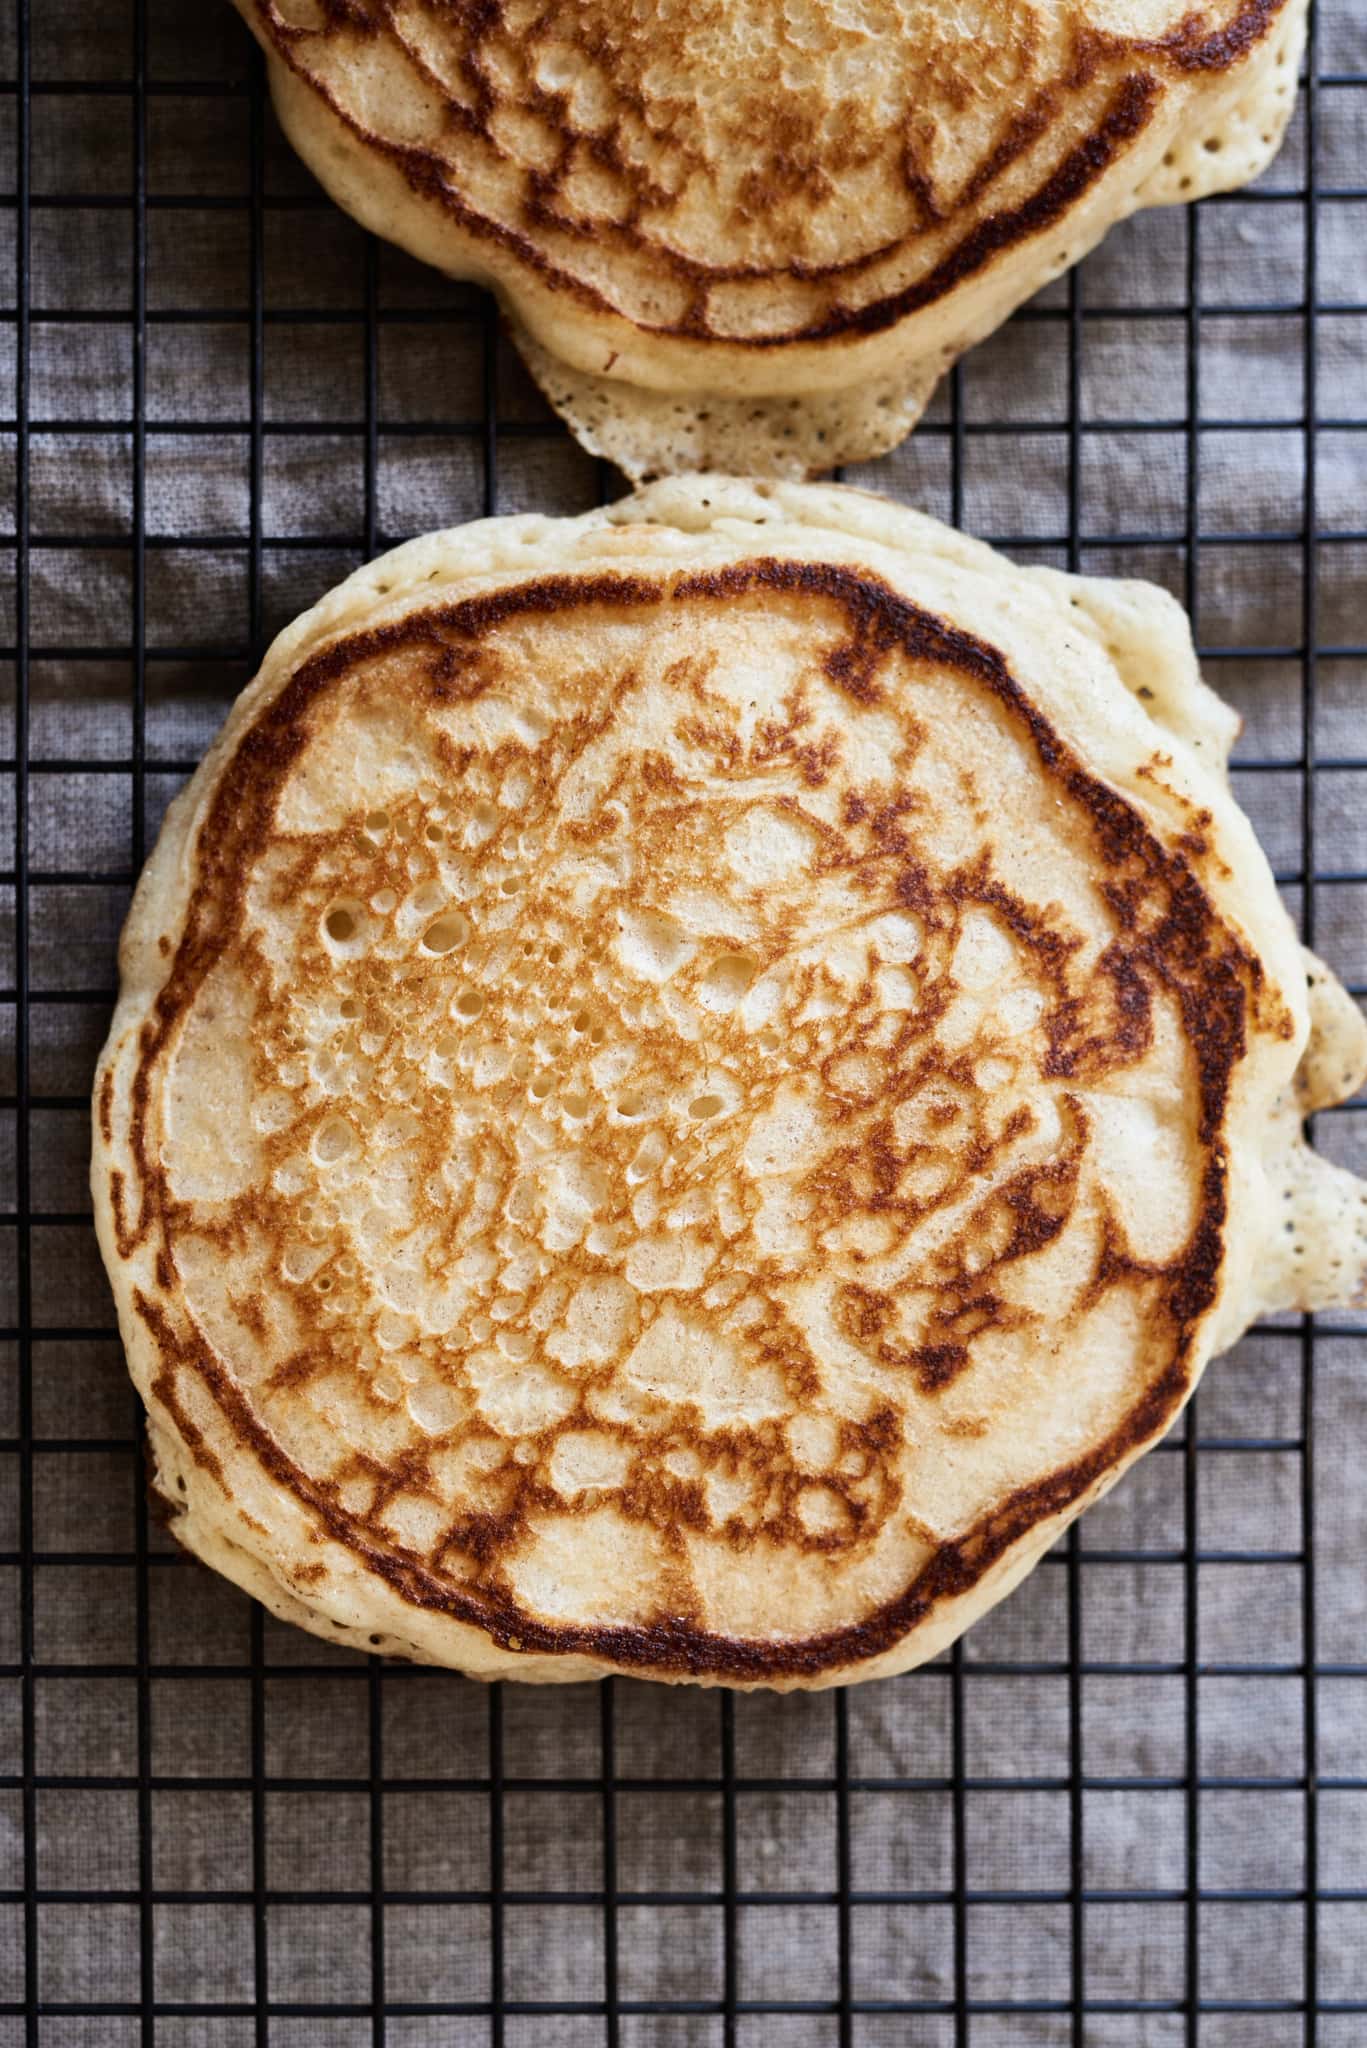 Sourdough pancake texture and color.